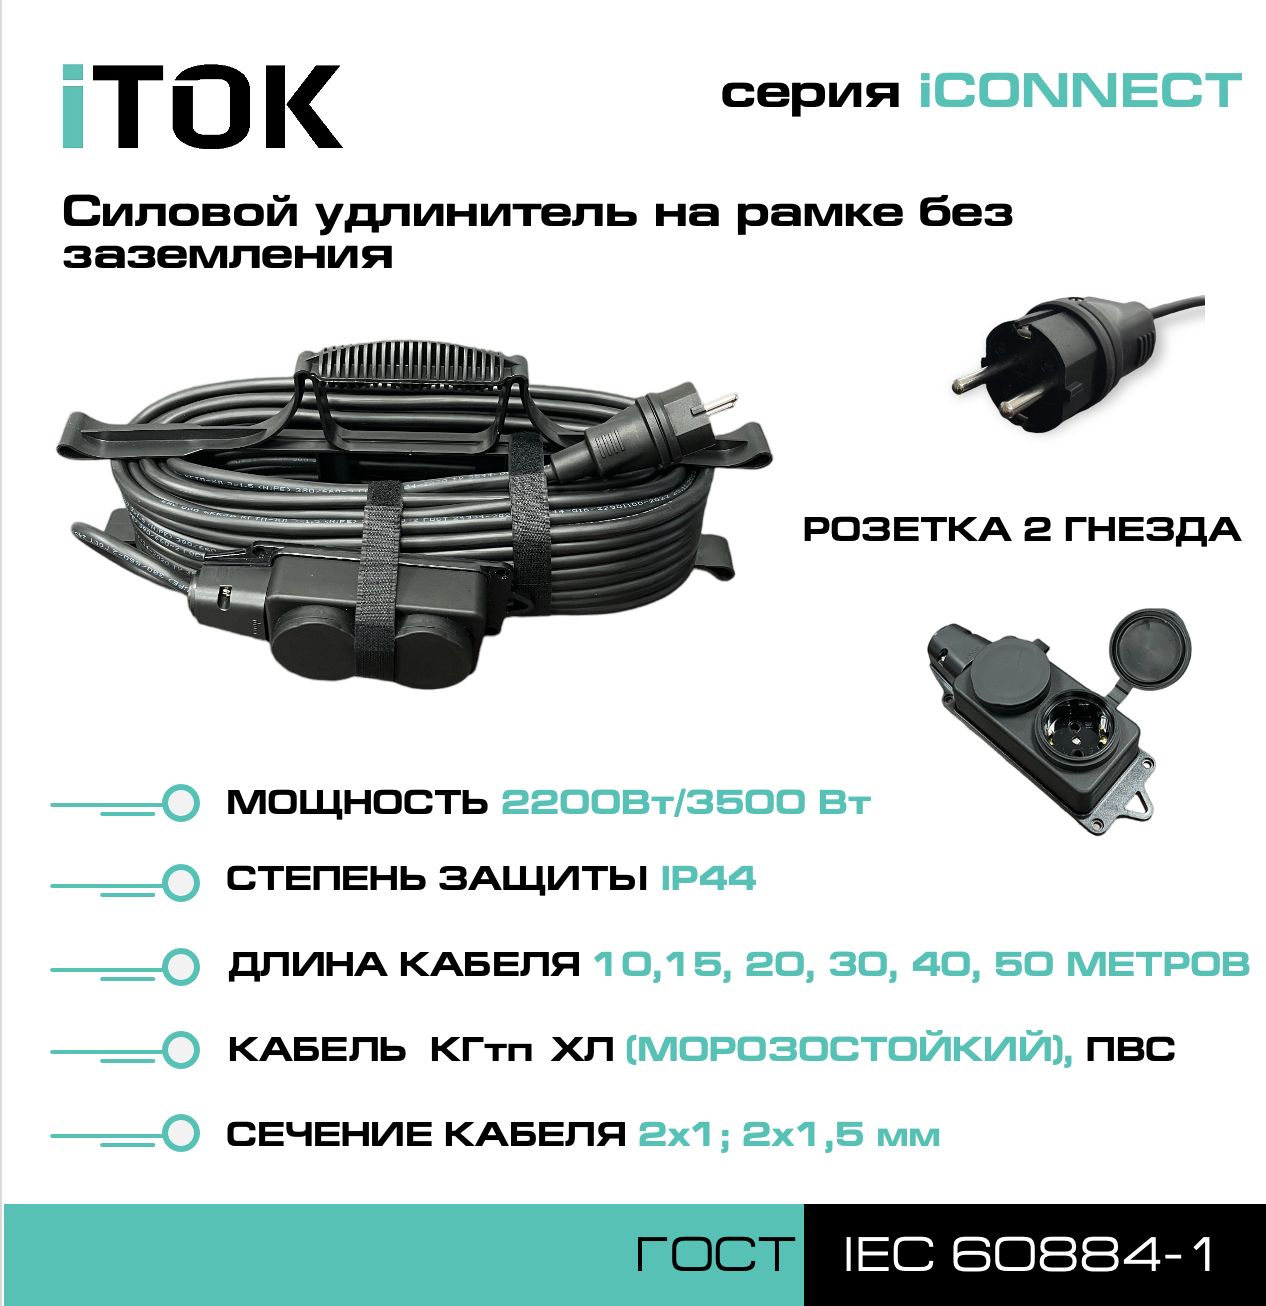 Удлинитель на рамке без земли серии iTOK iCONNECT КГтп-ХЛ 2х1,5 мм 2 гнезда IP44 50 м зарядные гнезда usb в виде клавиши marina 3 1 а more 10264236